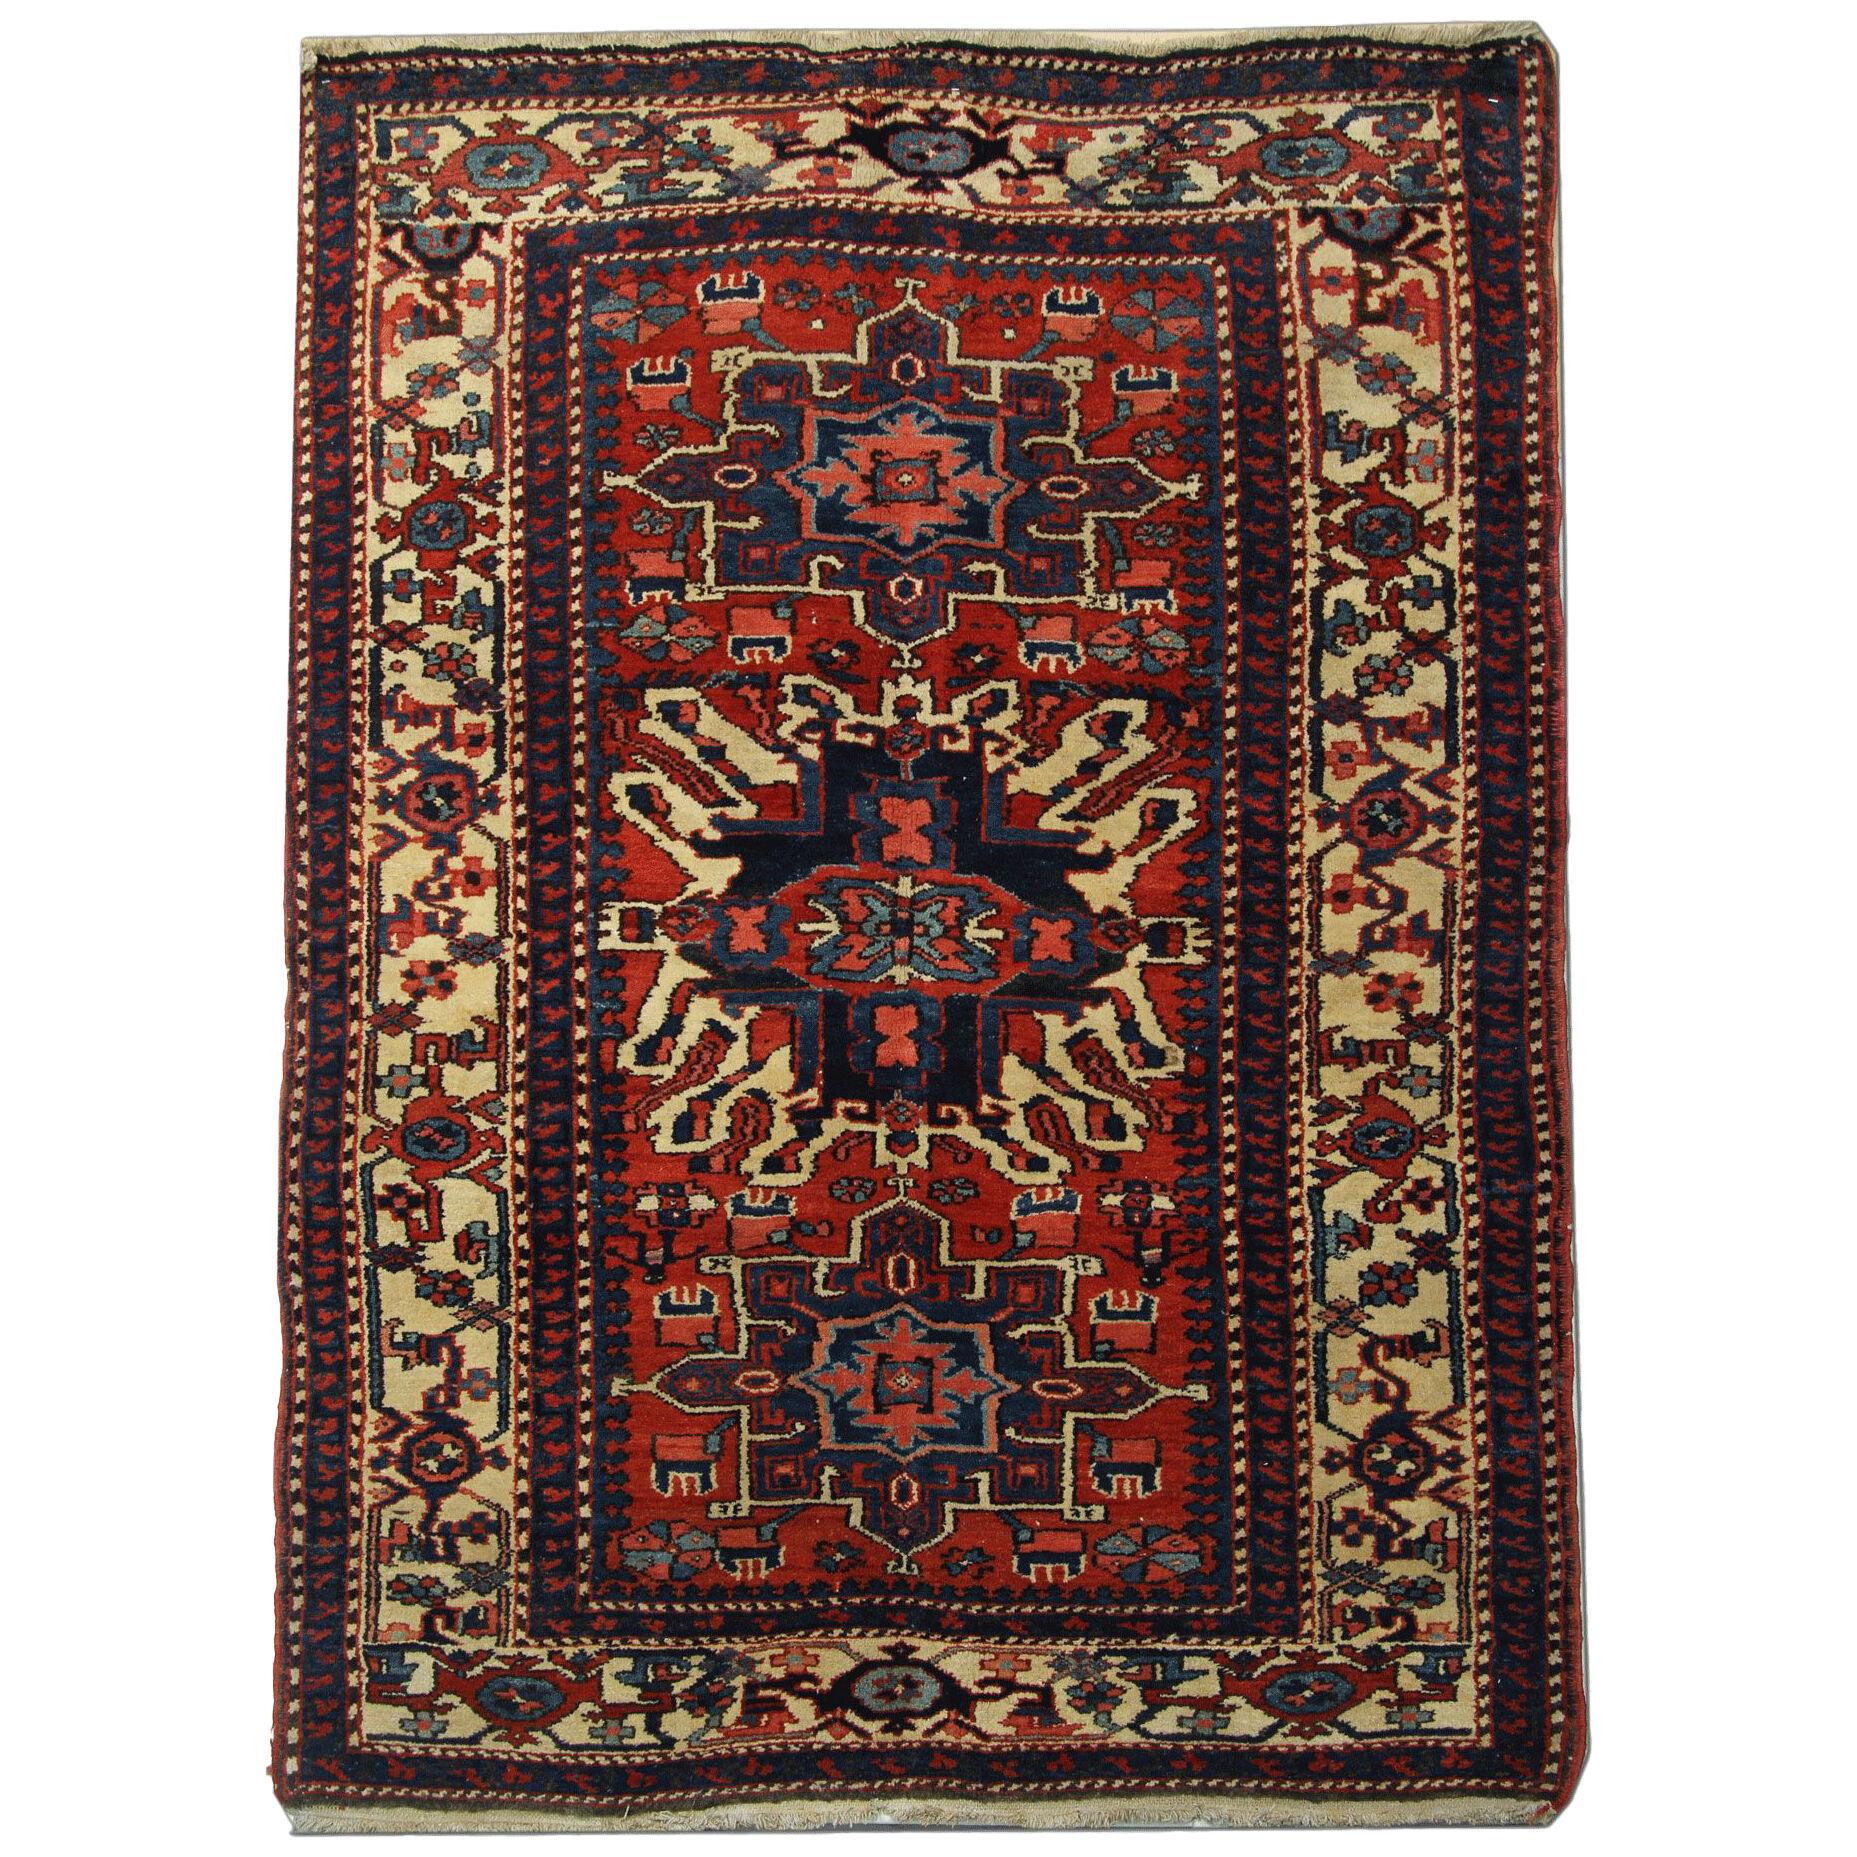 Antique Persian Heriz Area Rug Handwoven Wool Carpet- 140x190cm 